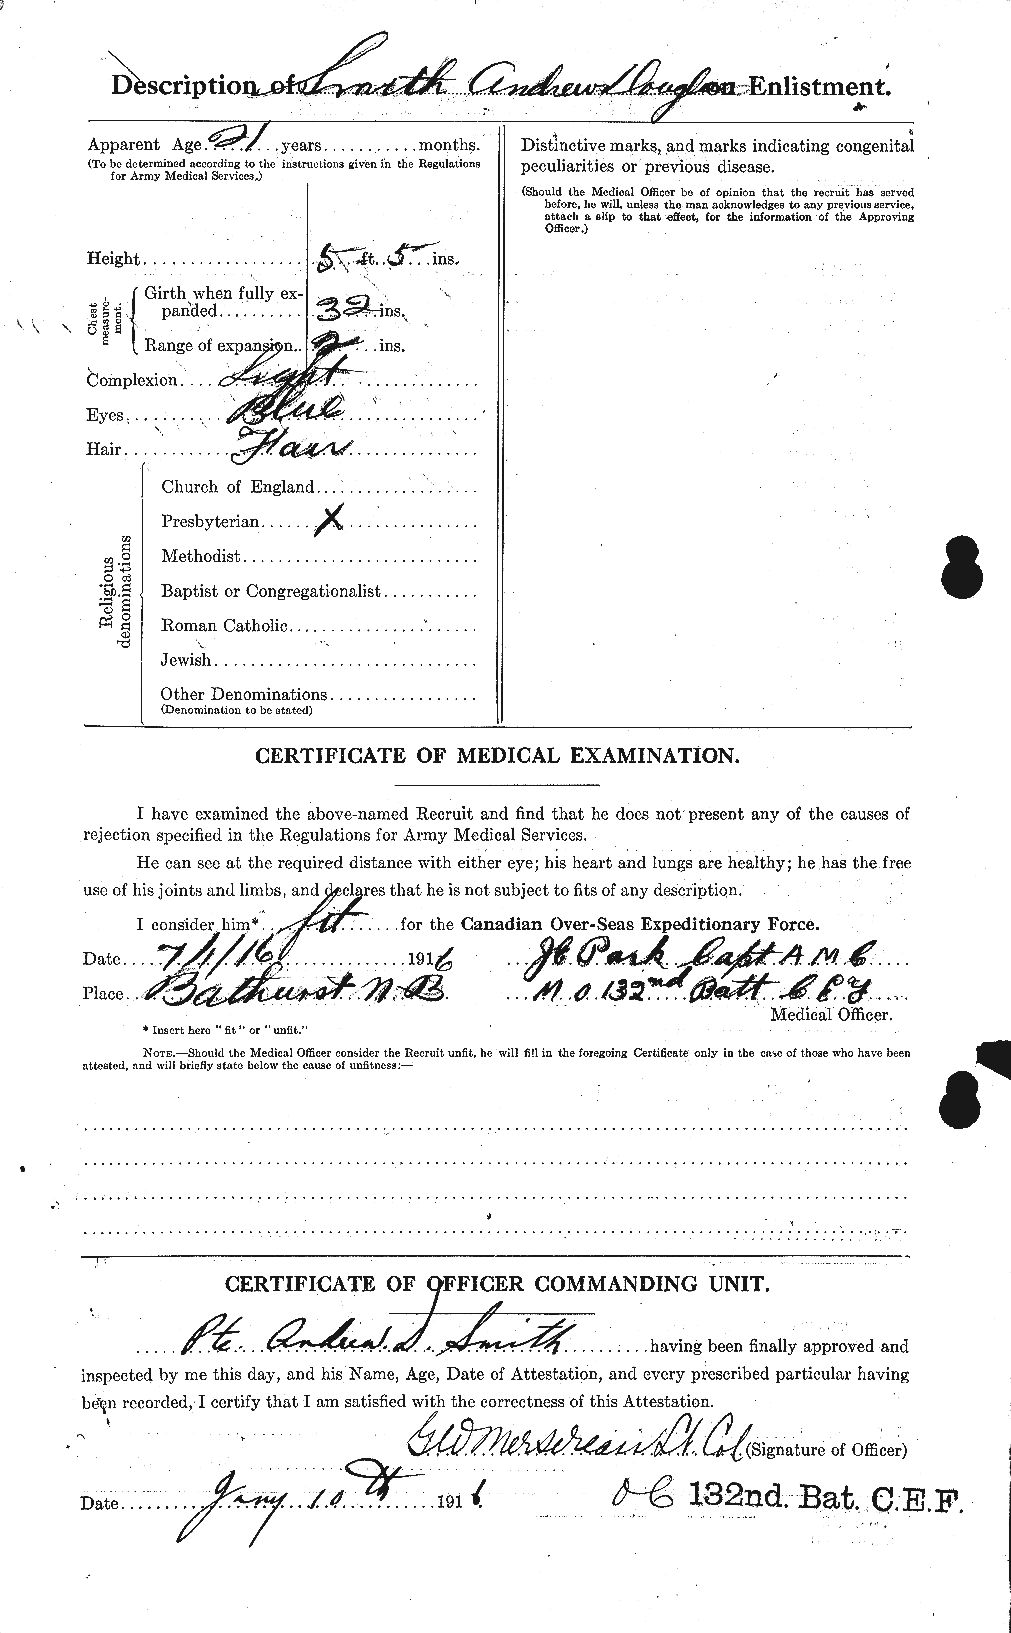 Dossiers du Personnel de la Première Guerre mondiale - CEC 102485b